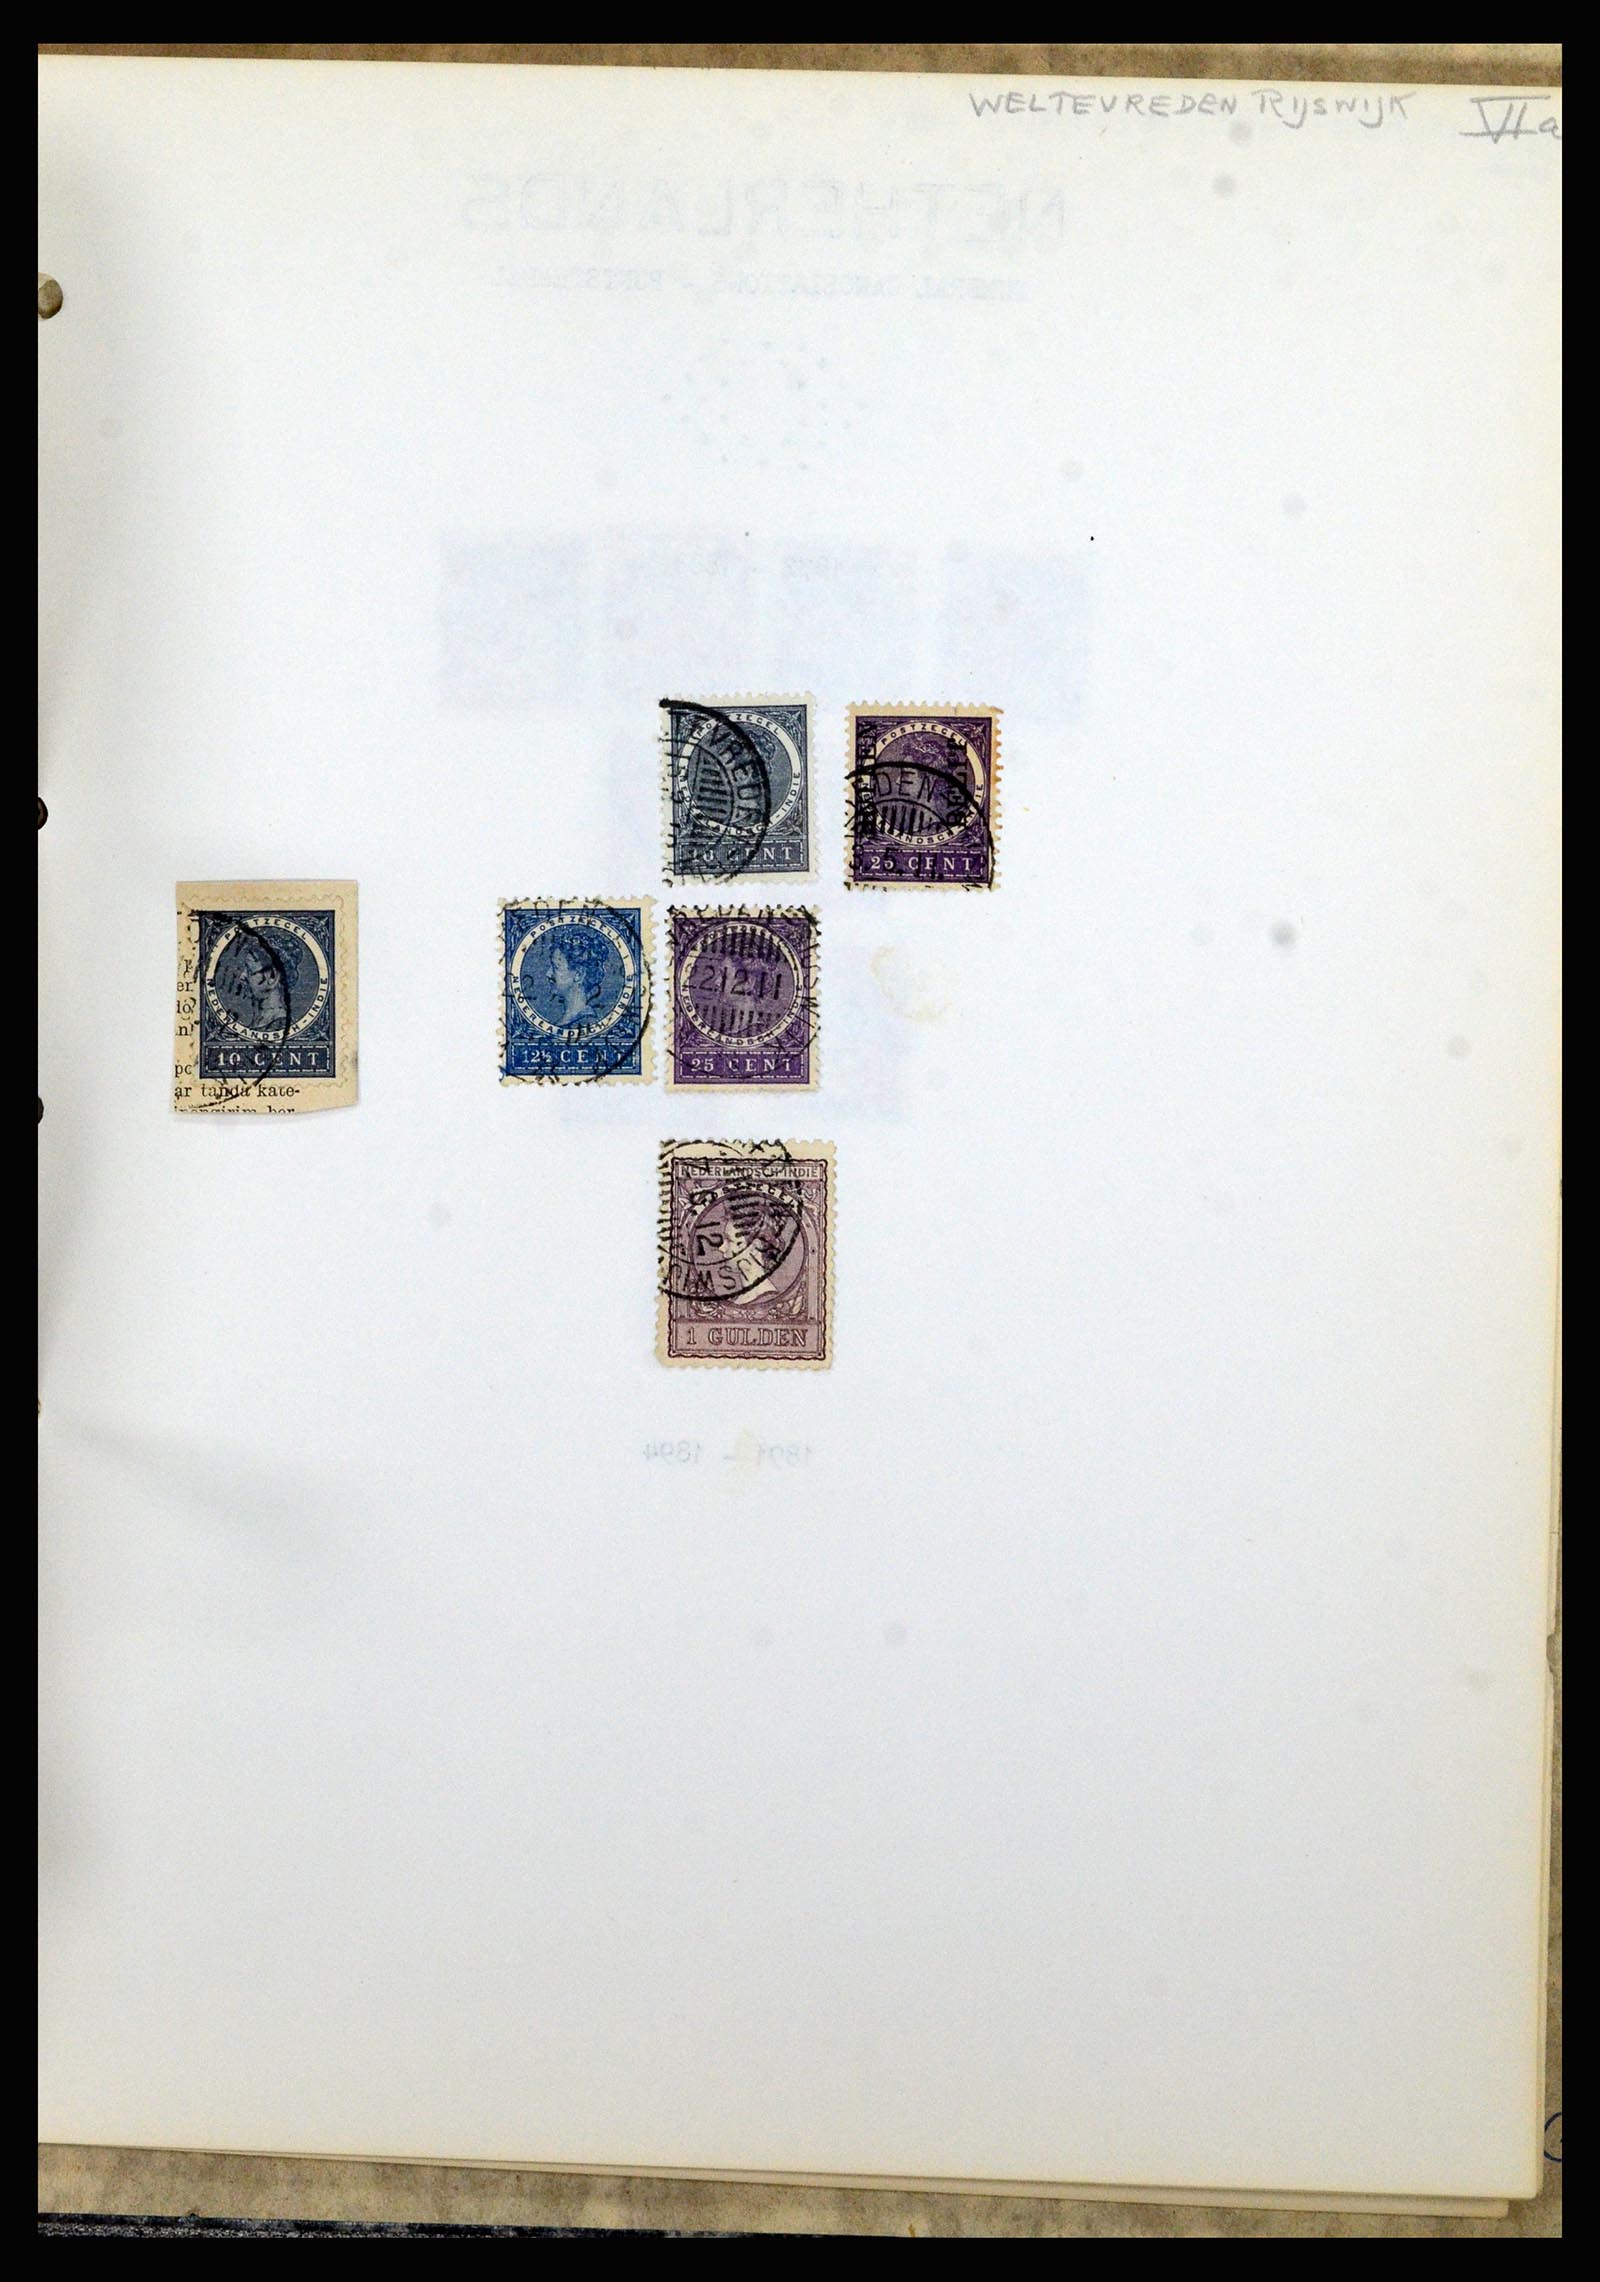 36841 193 - Postzegelverzameling 36841 Nederlands Indië kortebalk stempels.